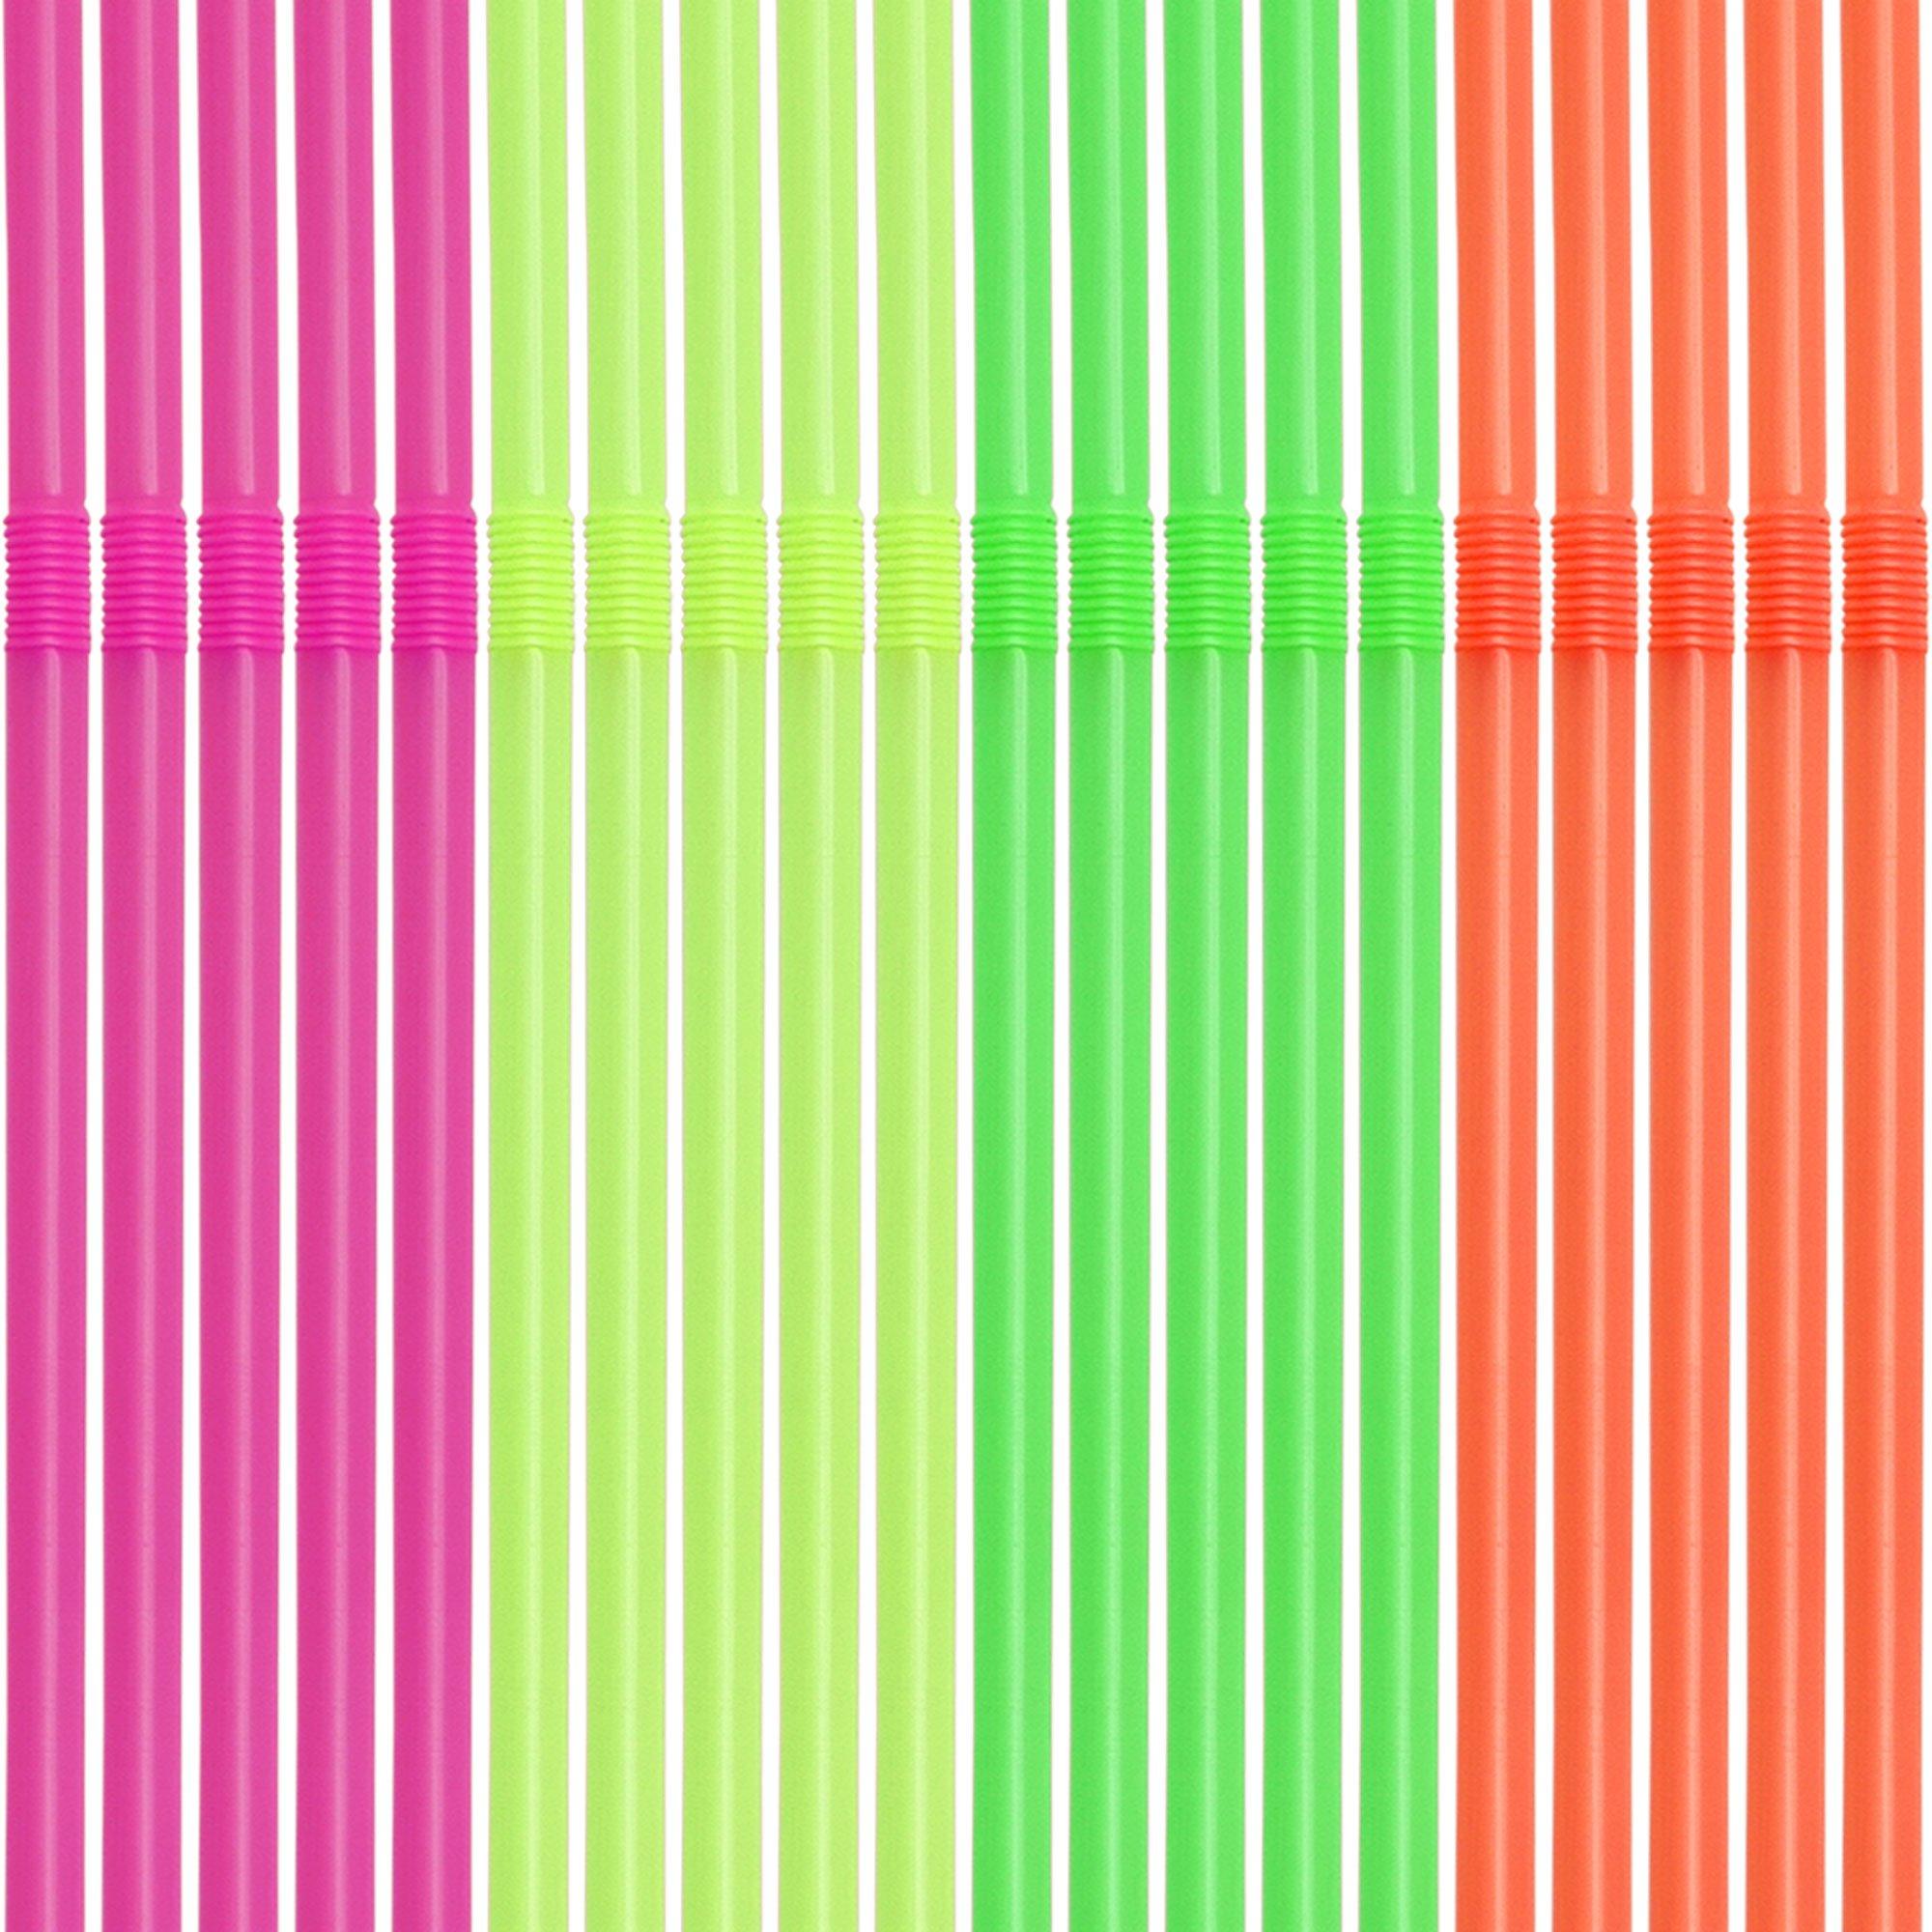 Neon Flexible Straws 200ct